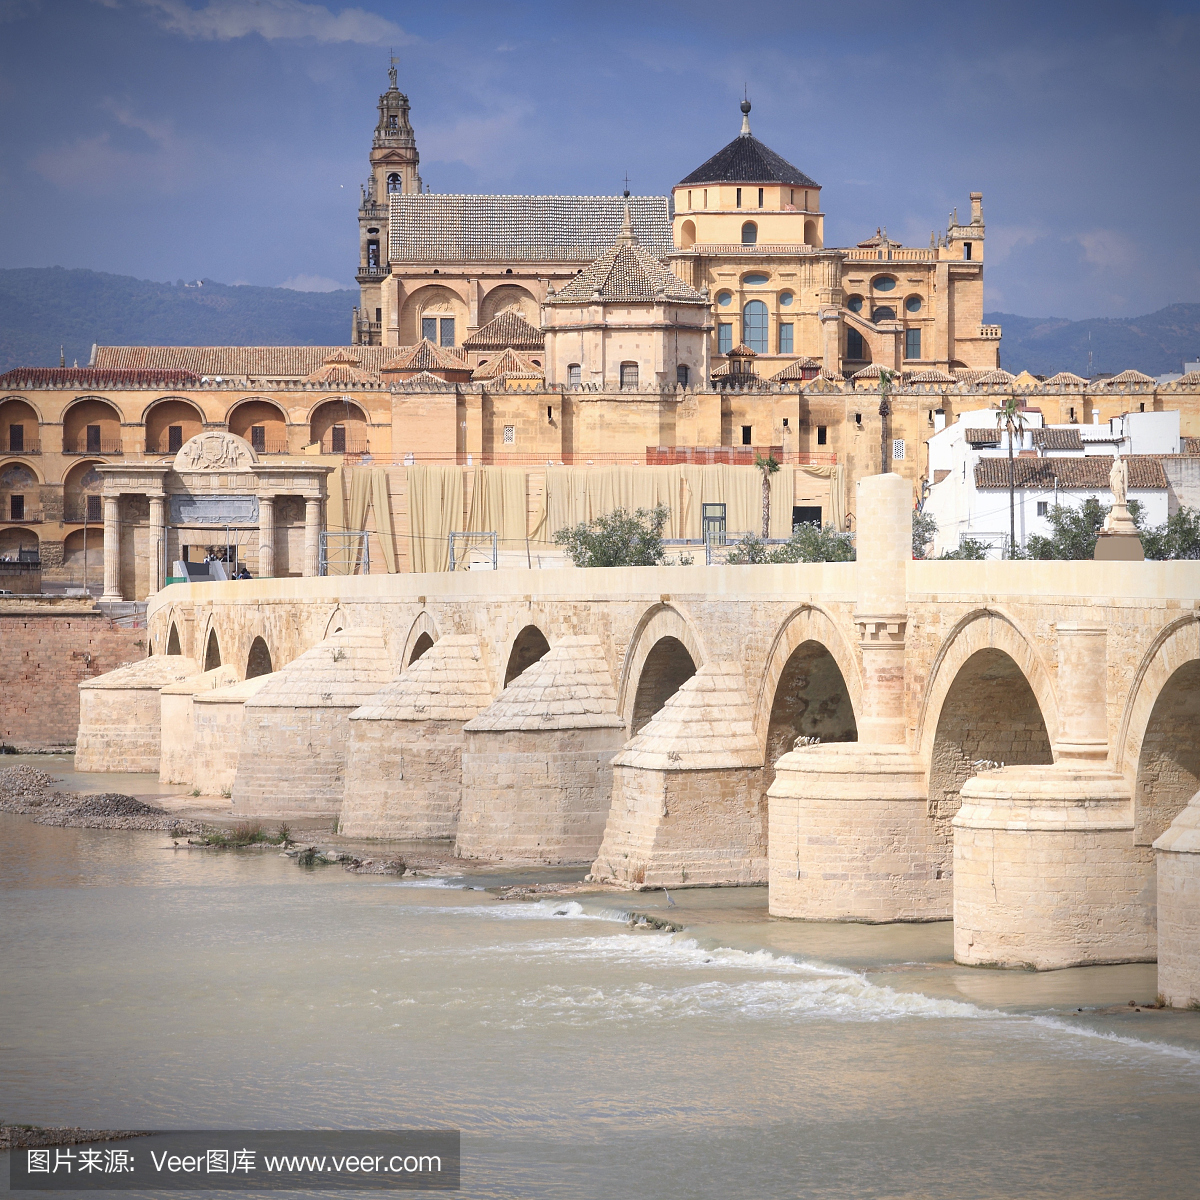 罗马桥,西班牙罗马桥,科尔多瓦清真寺,科尔多瓦回教堂